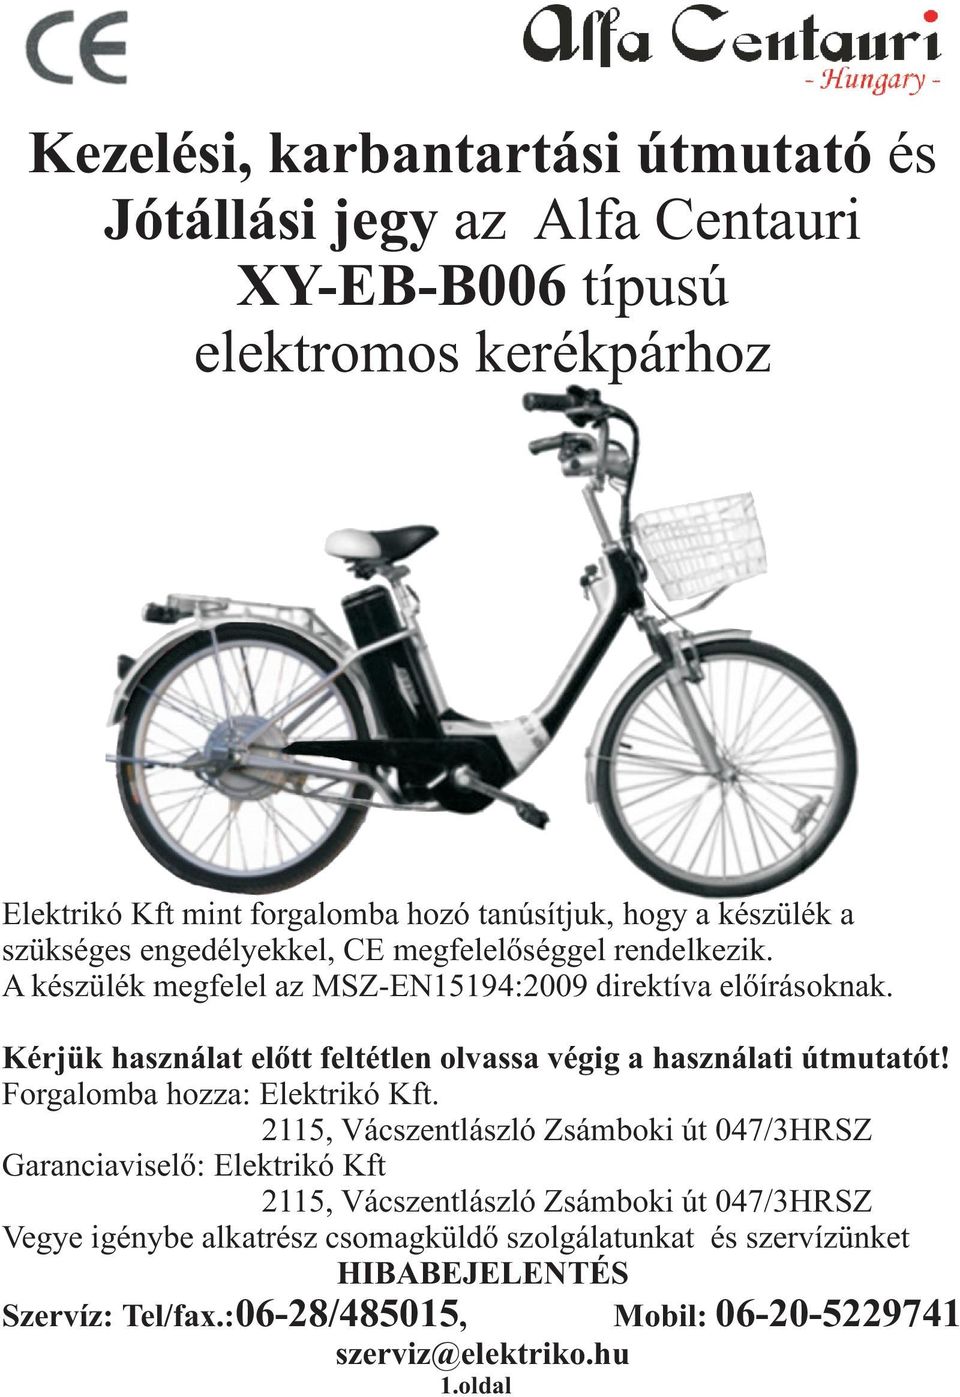 Kezelési, karbantartási útmutató és Jótállási jegy az Alfa Centauri  XY-EB-B006 típusú elektromos kerékpárhoz - PDF Ingyenes letöltés